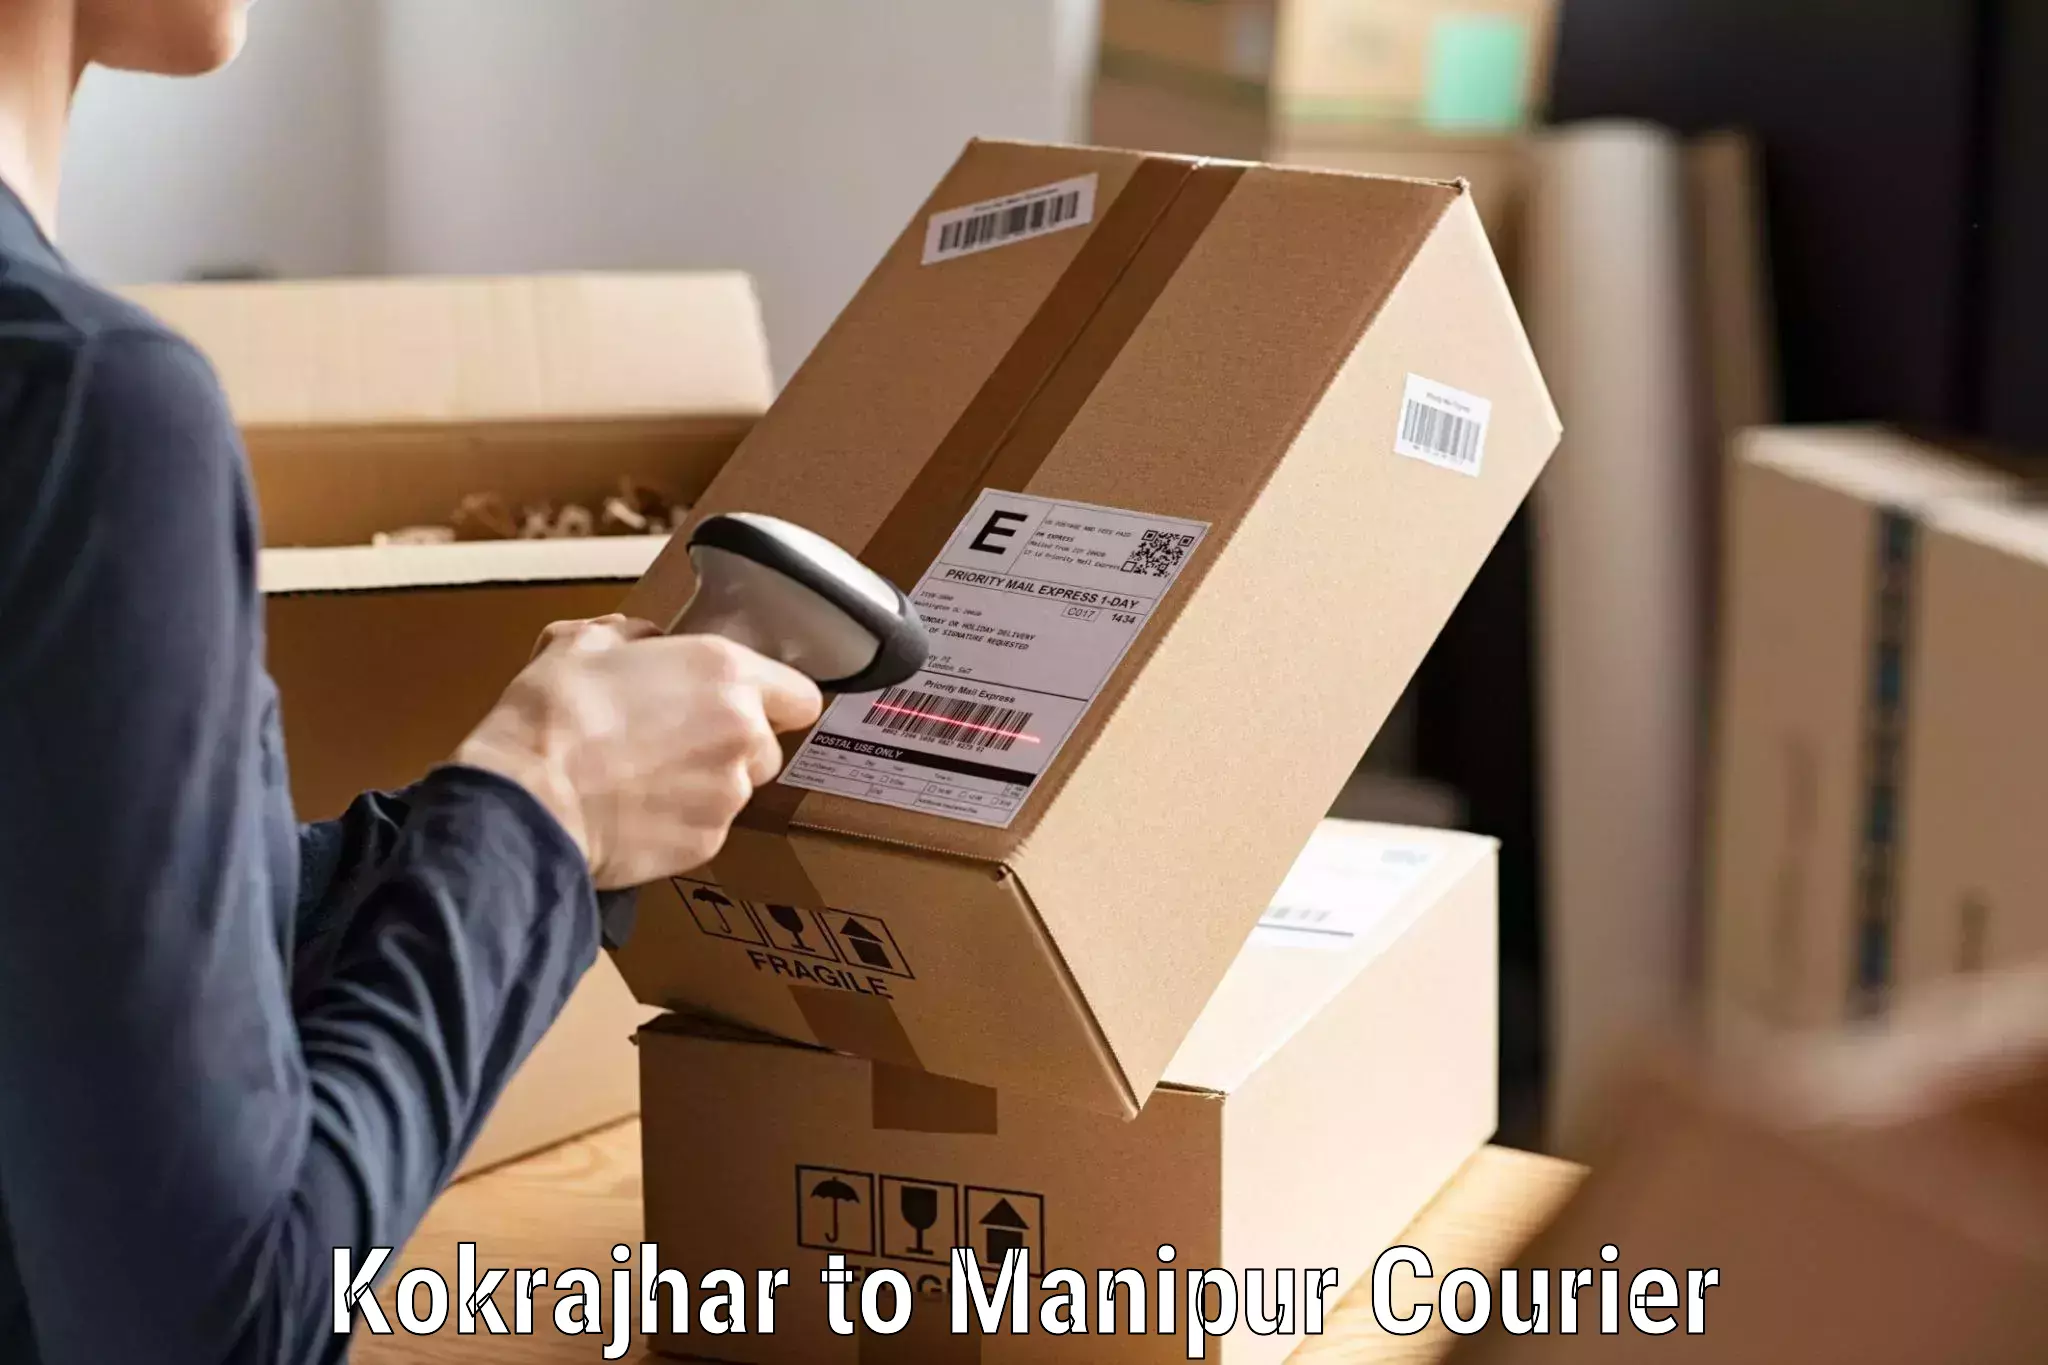 Individual parcel service Kokrajhar to Kaptipada